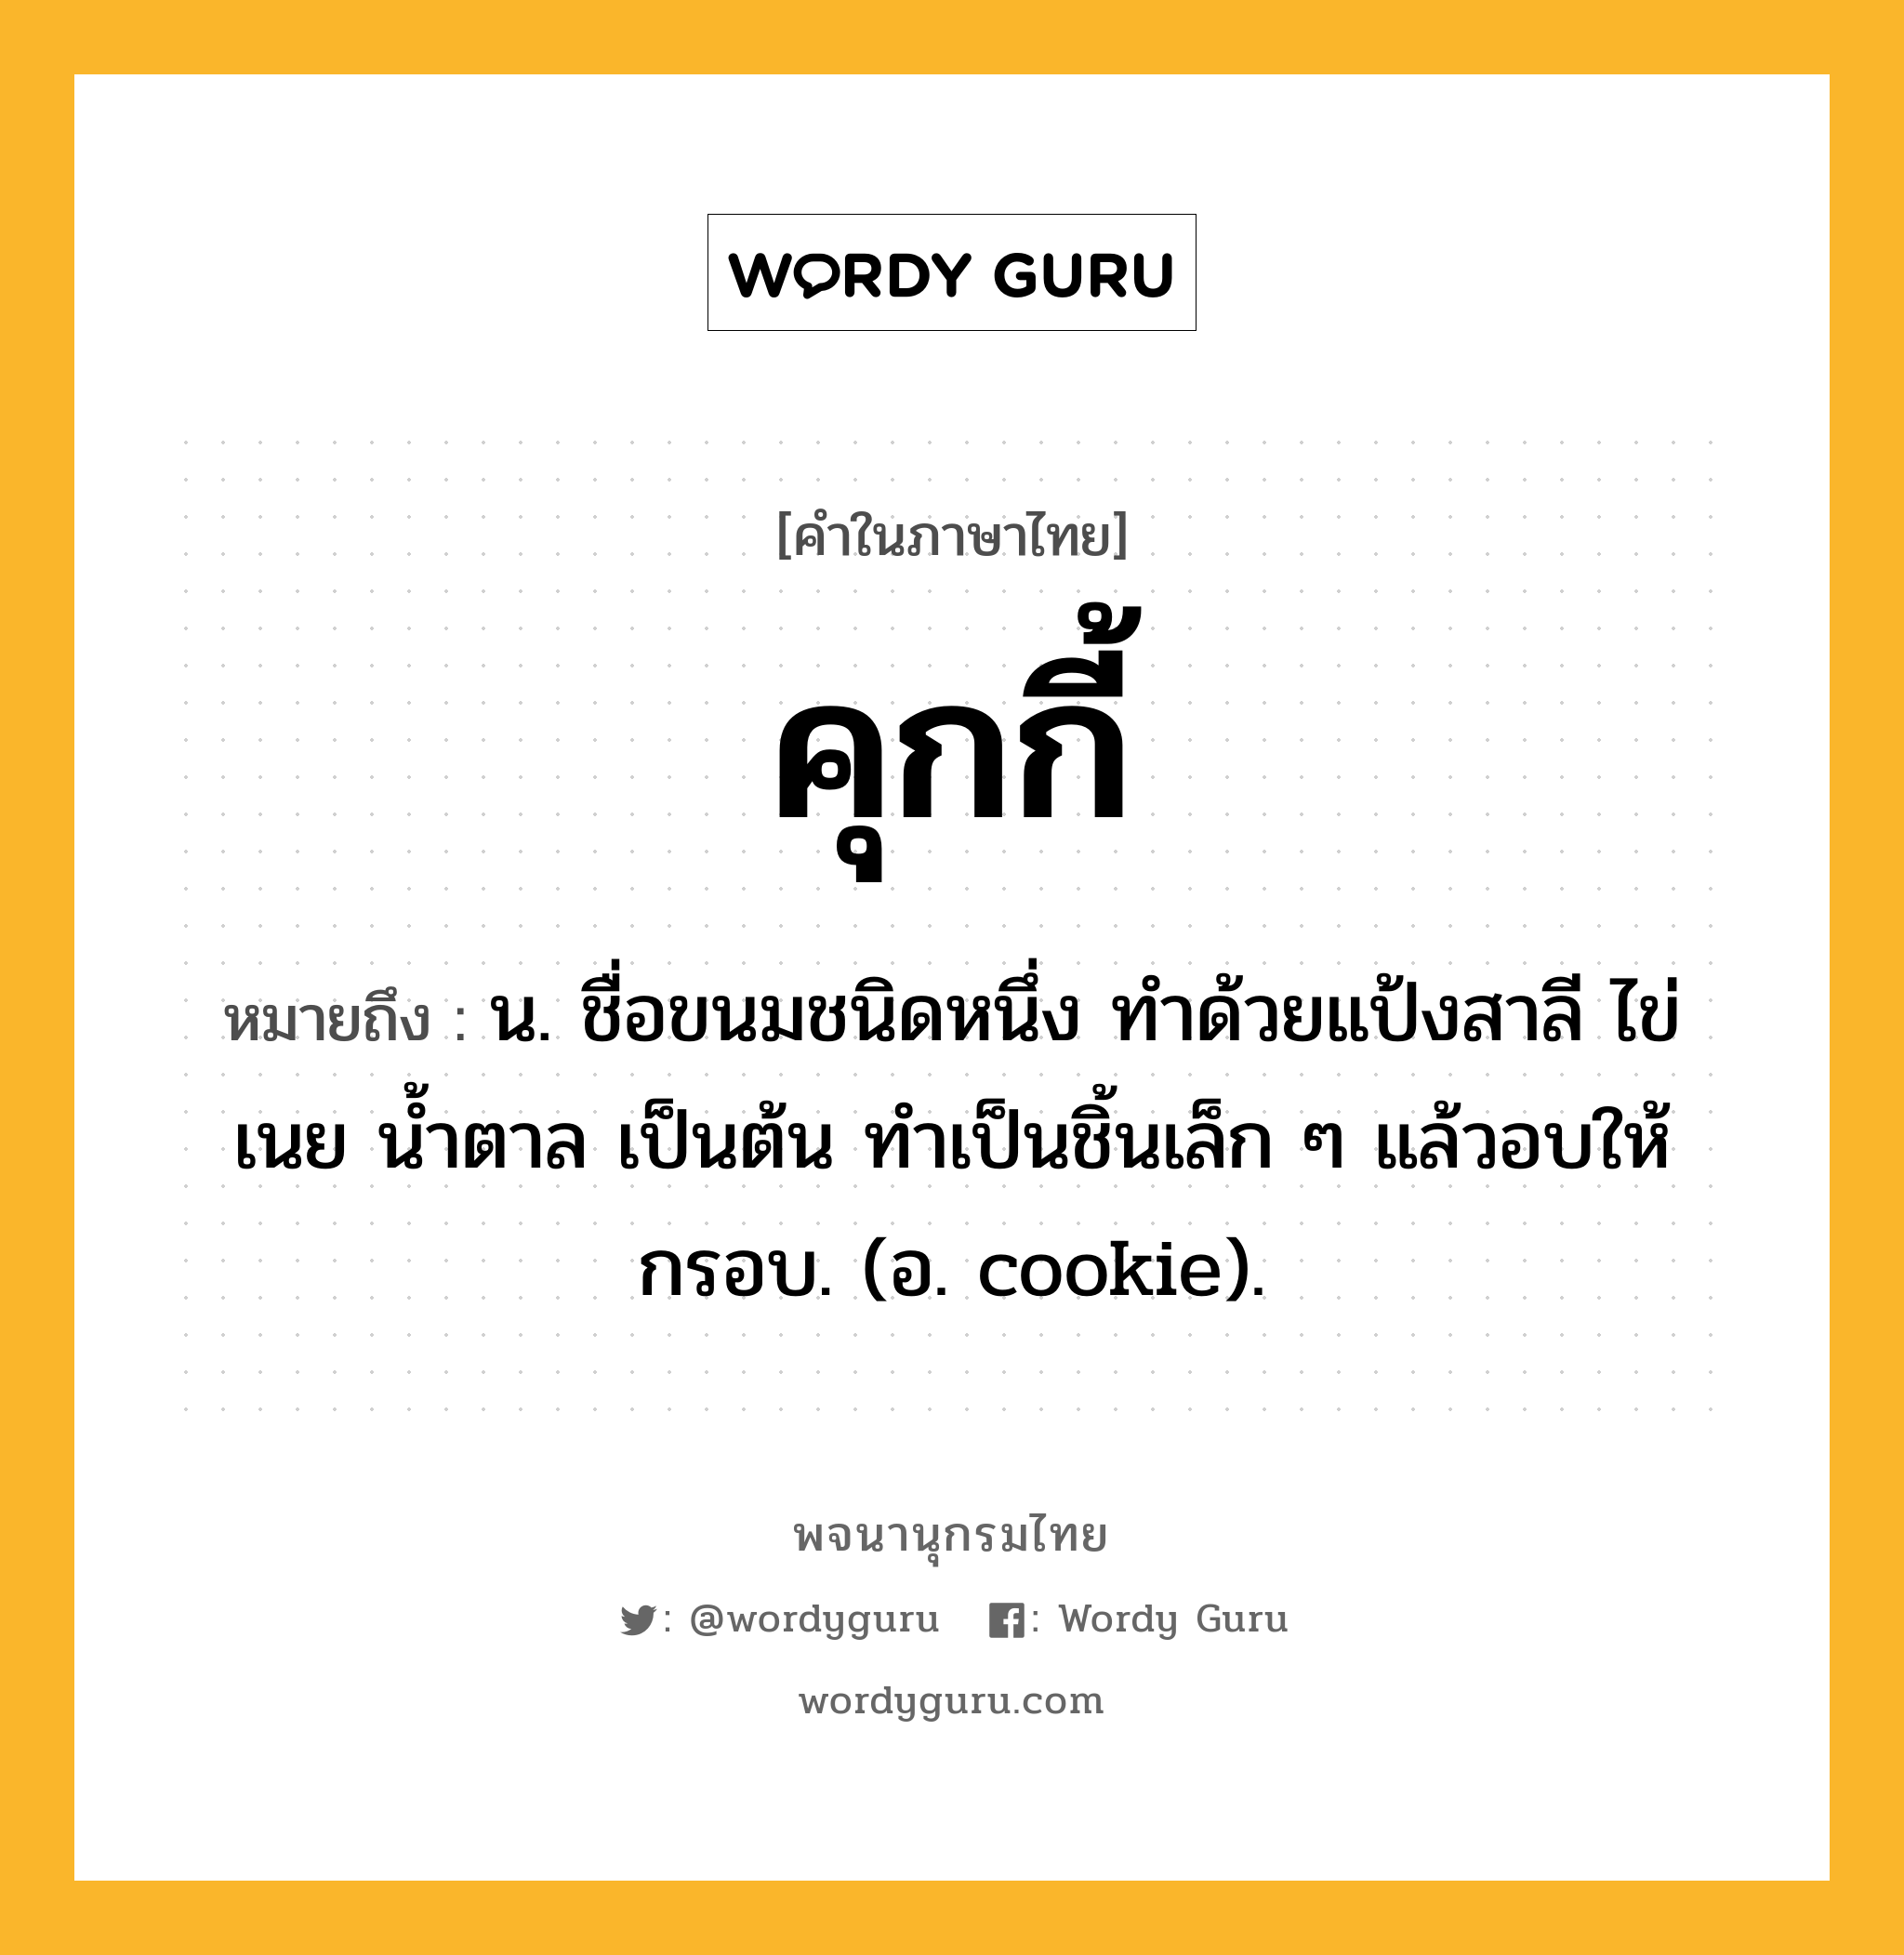 คุกกี้ หมายถึงอะไร?, คำในภาษาไทย คุกกี้ หมายถึง น. ชื่อขนมชนิดหนึ่ง ทำด้วยแป้งสาลี ไข่ เนย น้ำตาล เป็นต้น ทําเป็นชิ้นเล็ก ๆ แล้วอบให้กรอบ. (อ. cookie).